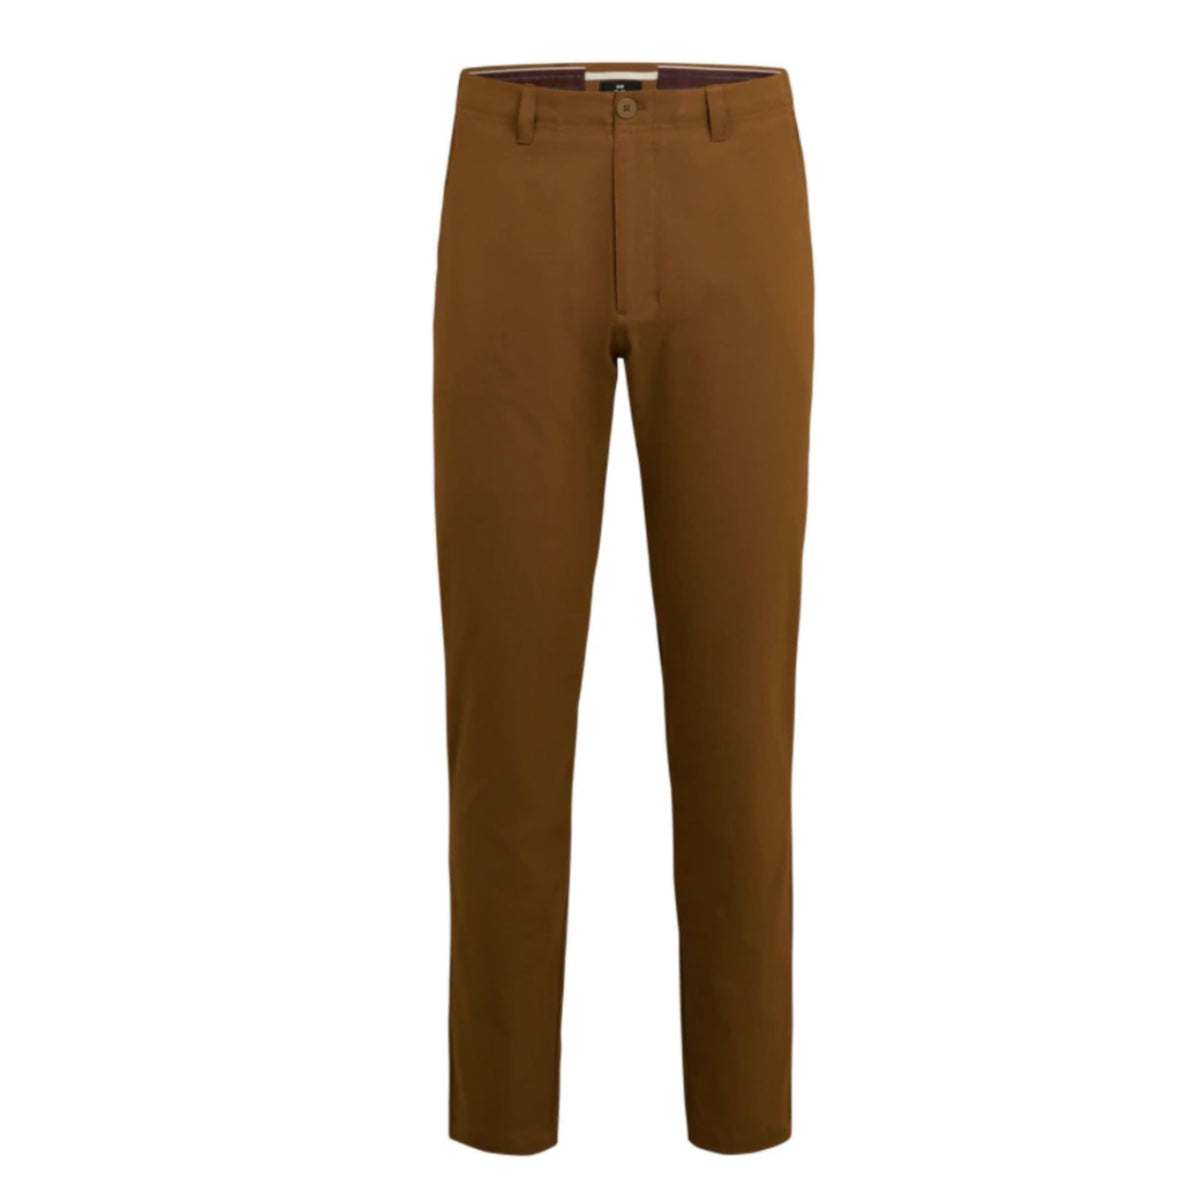 rapha tech trouser brown